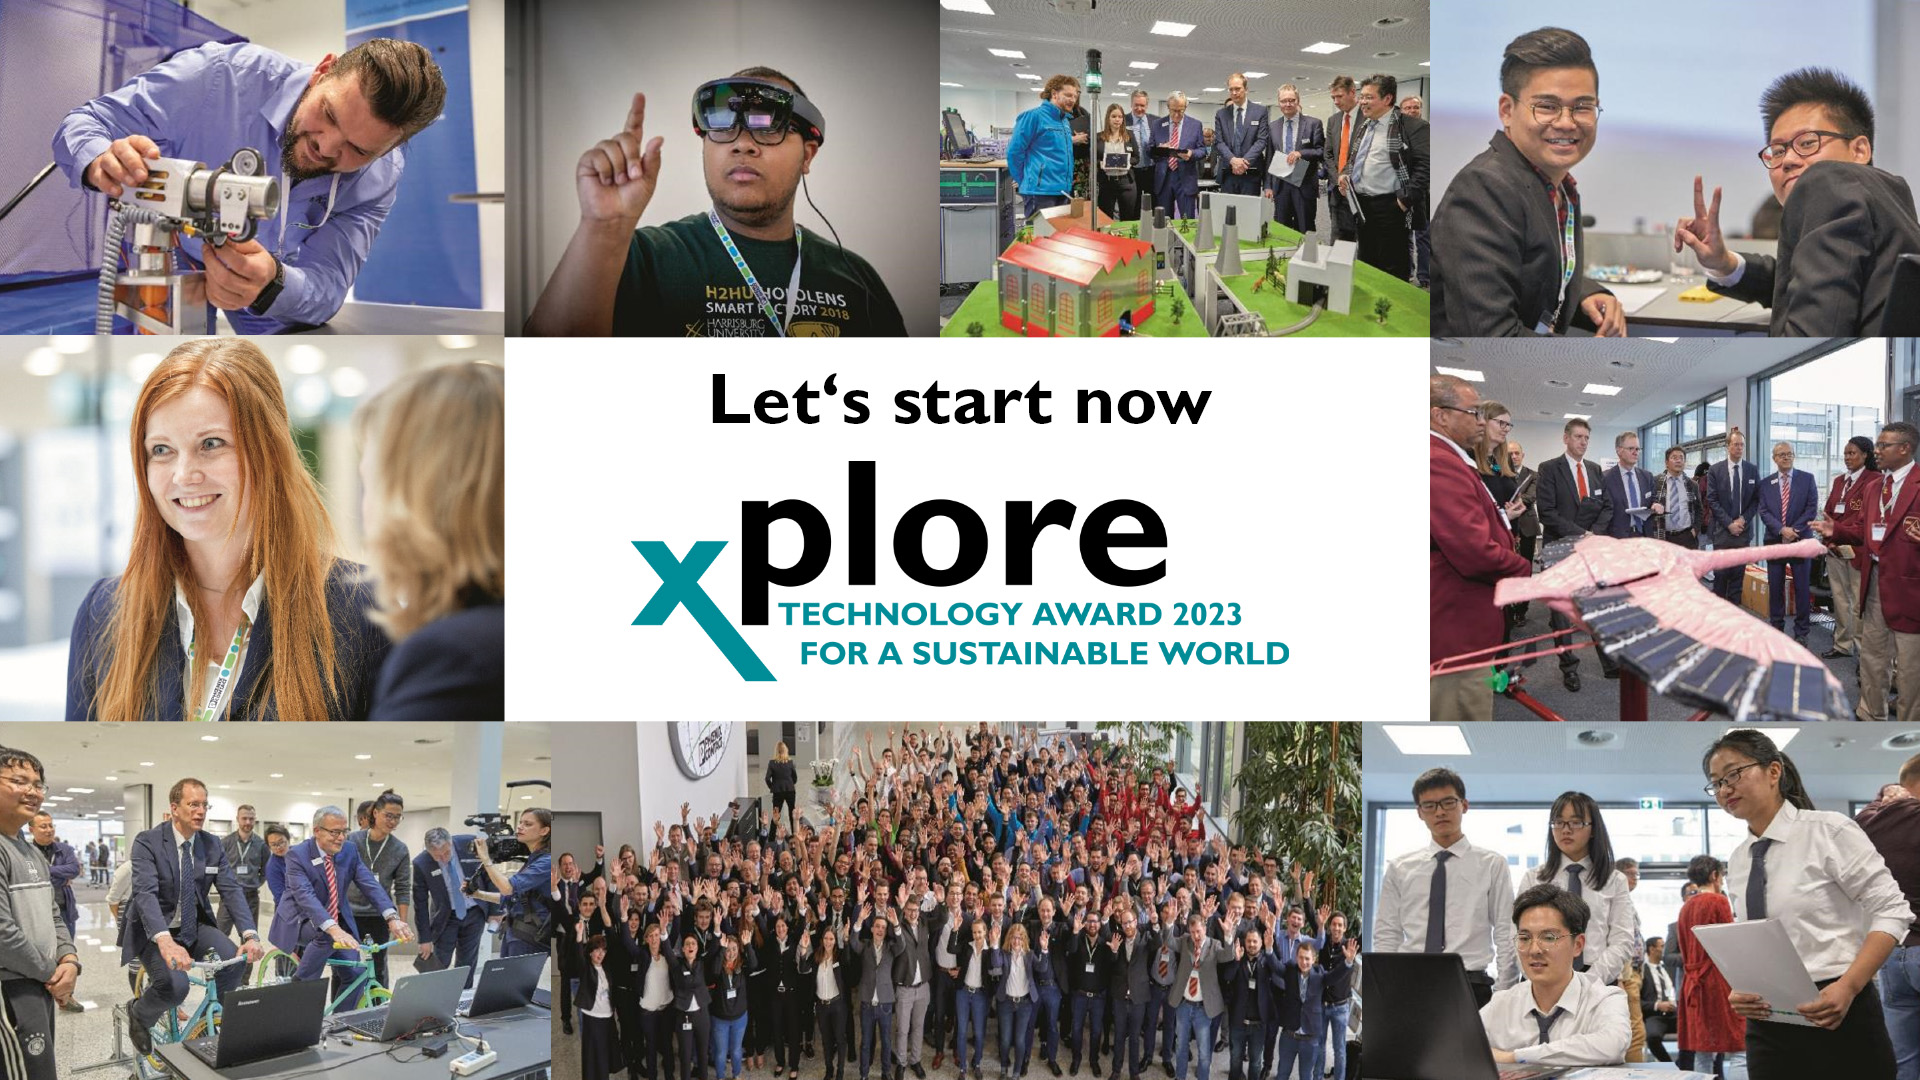 xplore2023 Technology Award geht in die nächste Runde: 100 Teams aus 30 Ländern starten beim Technologiepreis für eine nachhaltige Welt!